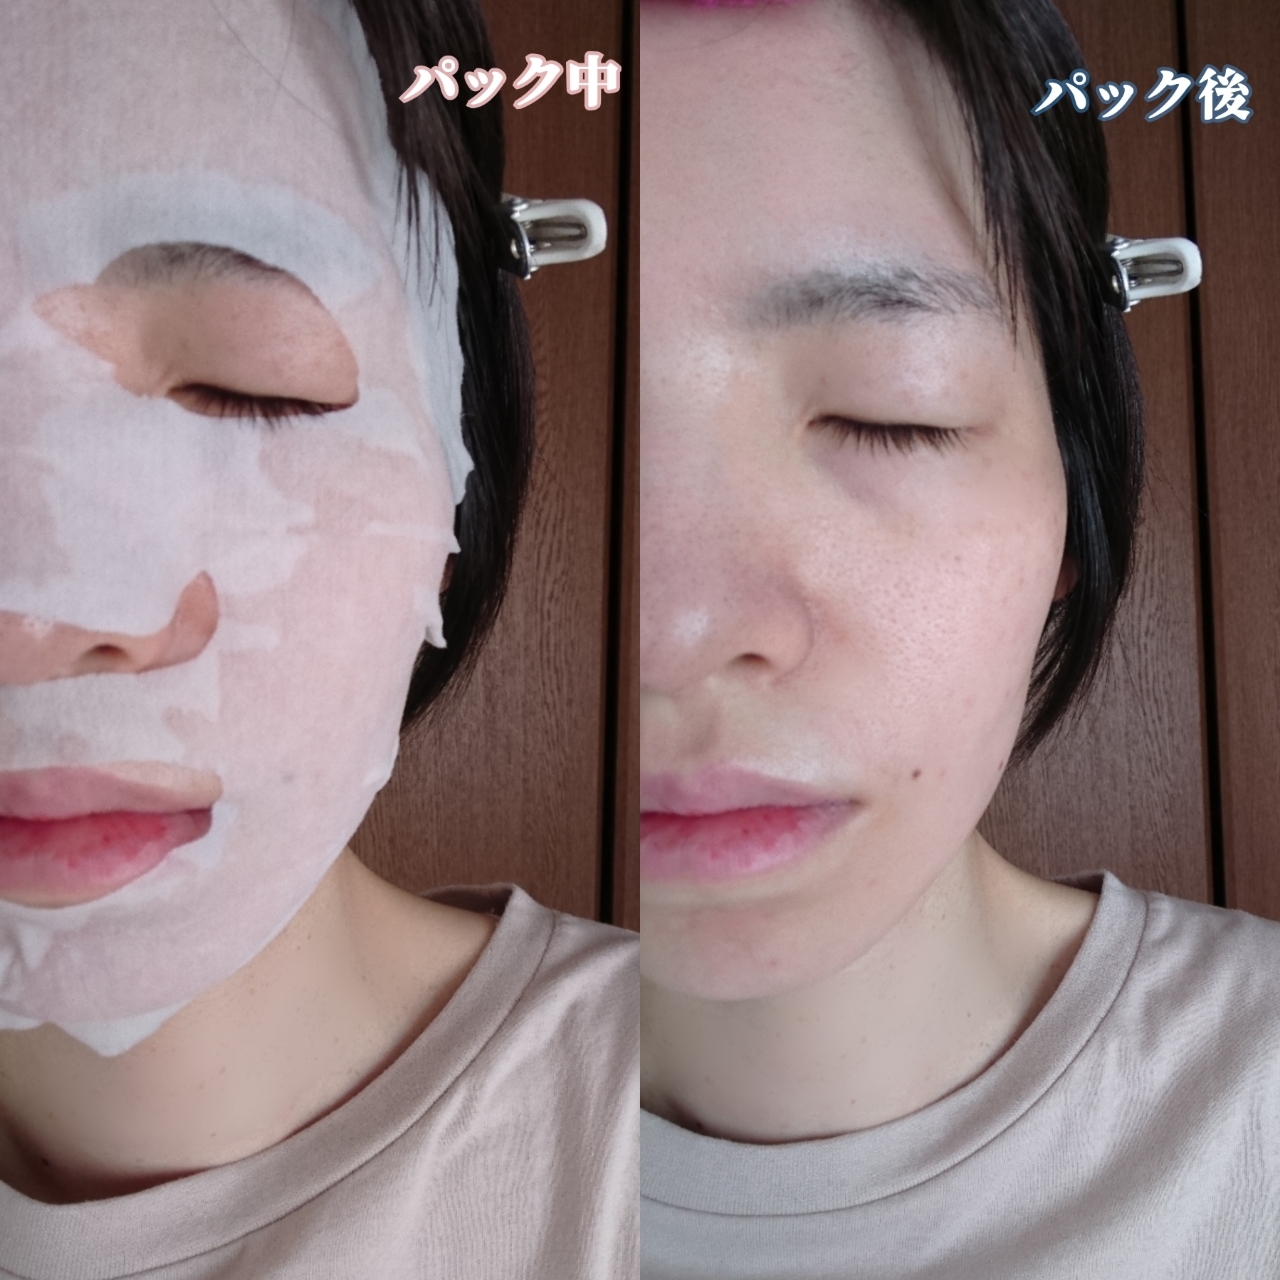 Saborino(サボリーノ)薬用 ひたっとマスク ACを使ったYuKaRi♡さんのクチコミ画像5